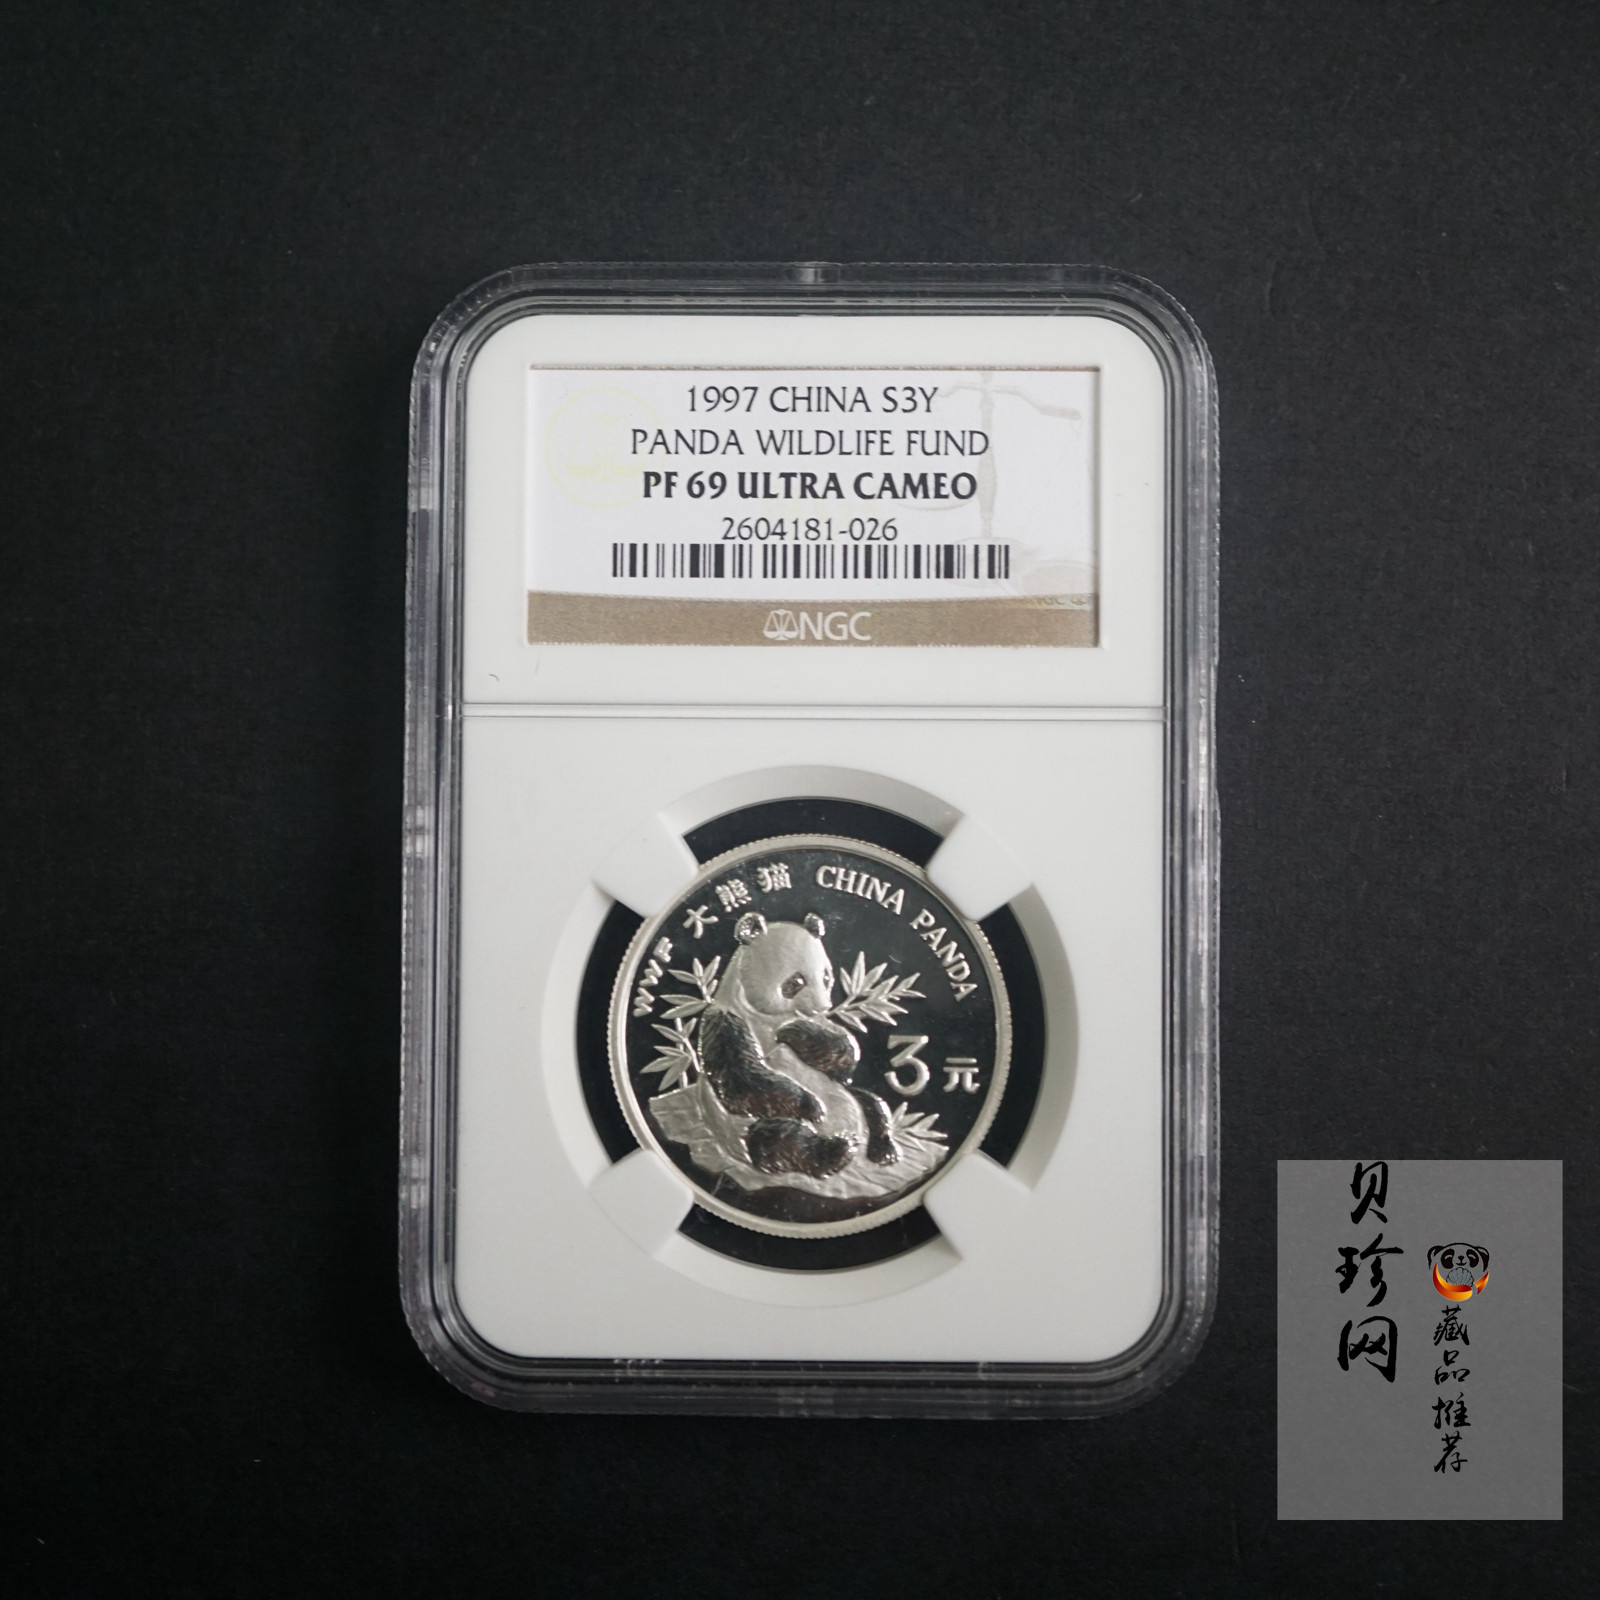 【970601】1997年世界野生动物基金会-大熊猫15克精制银币